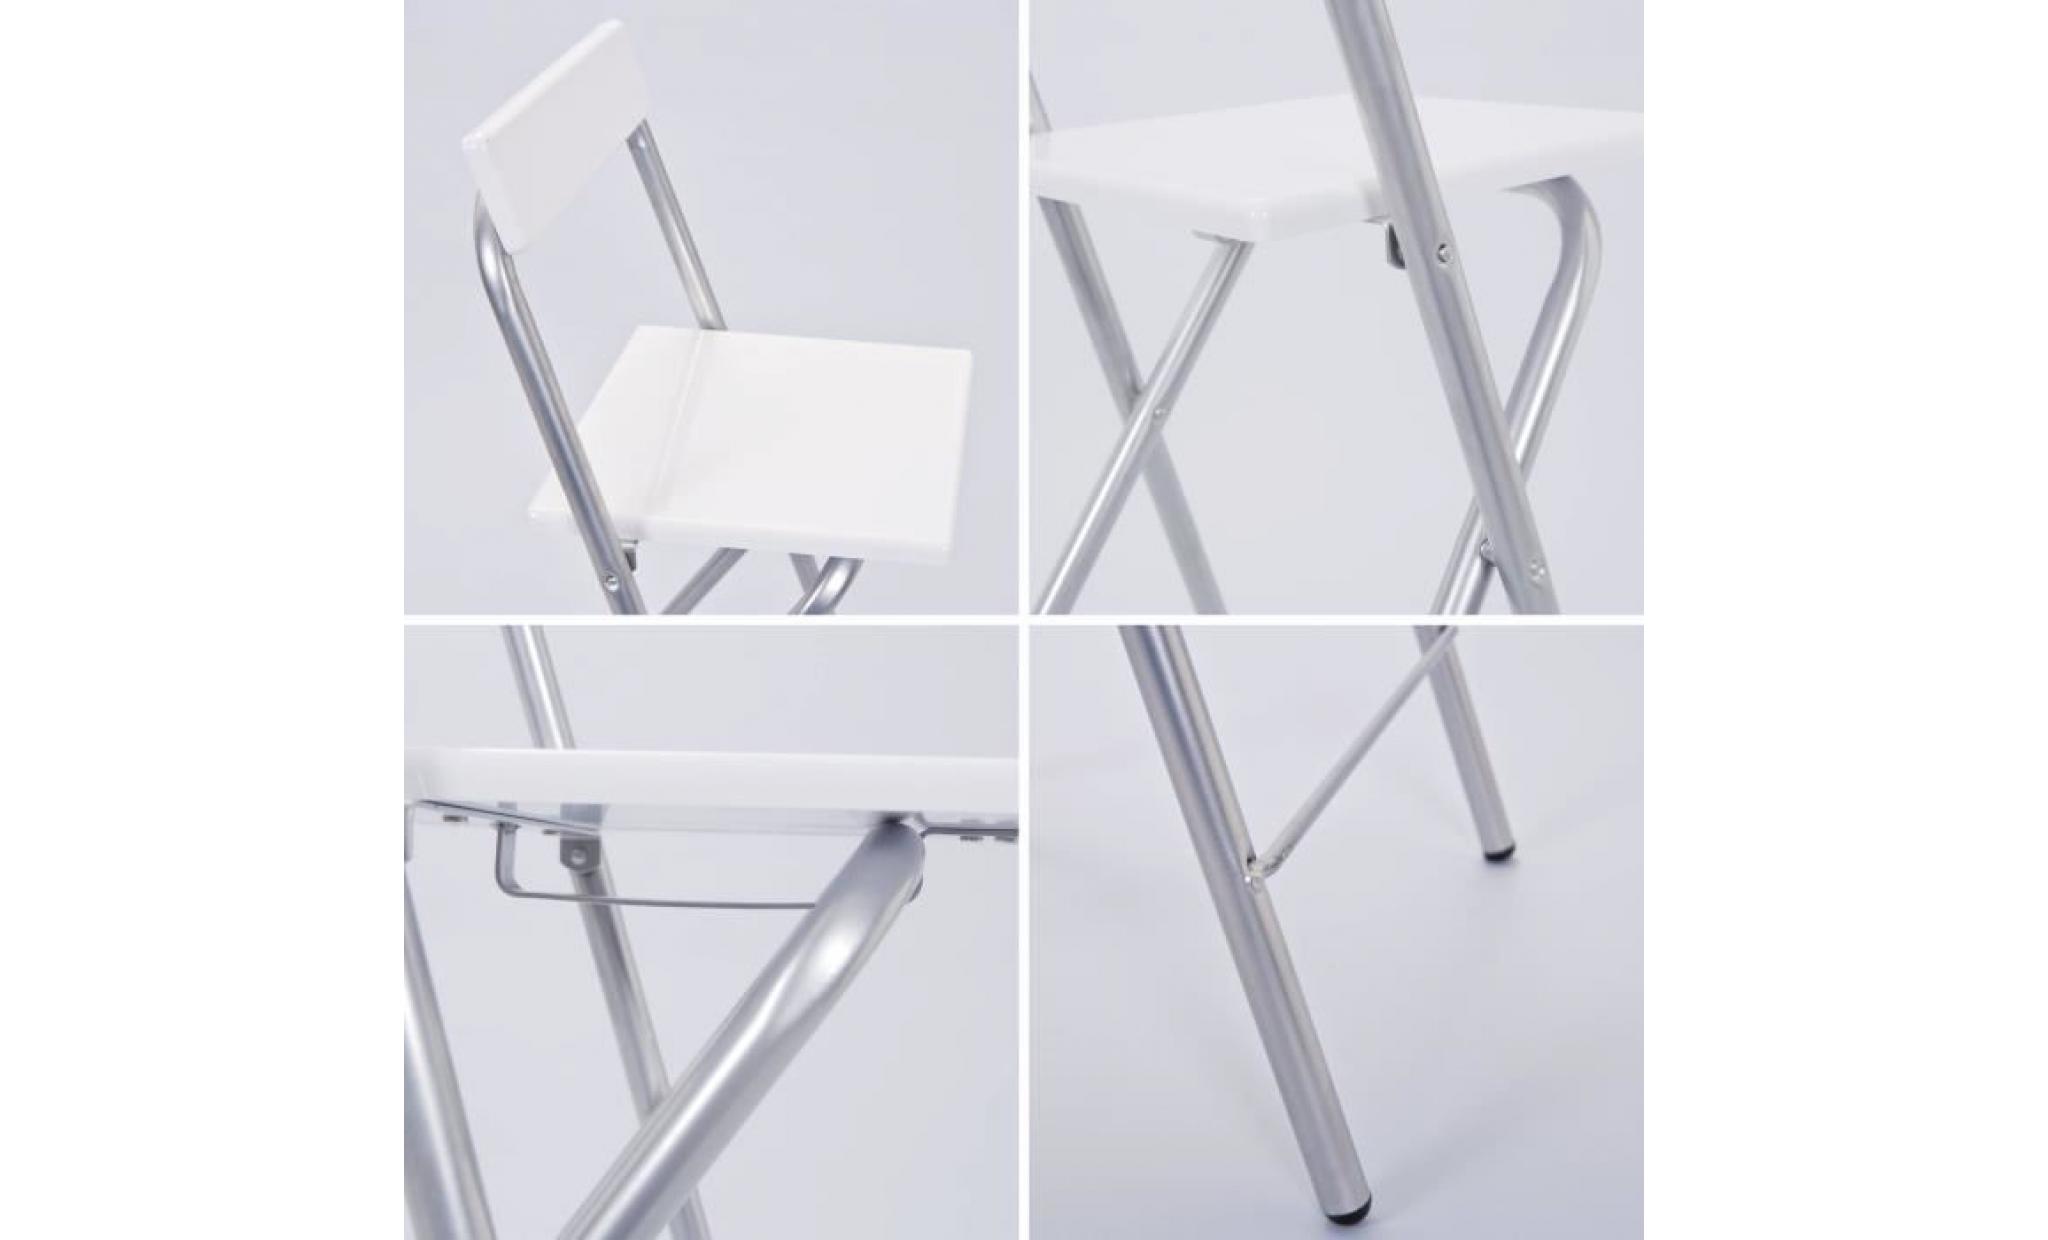 chaise pliante, chaise haute pliante, tabouret de bar, tabouret pliant, chaise blanche, tabouret blanc, chaise haute de bar blanche pas cher